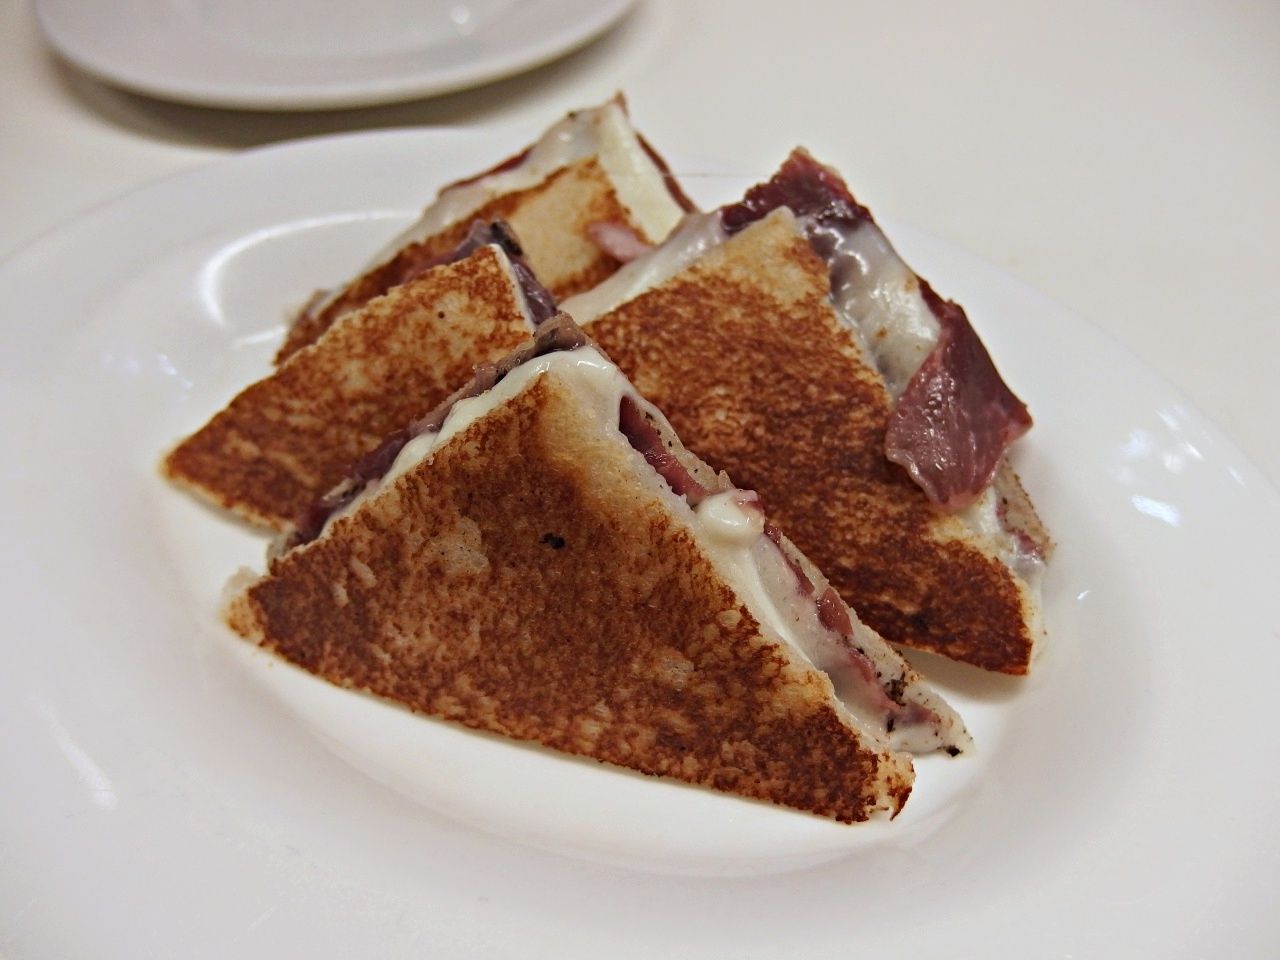 Mozzarella, Ham and Black Truffle Sandwich |Tapas 24 | Barcelona